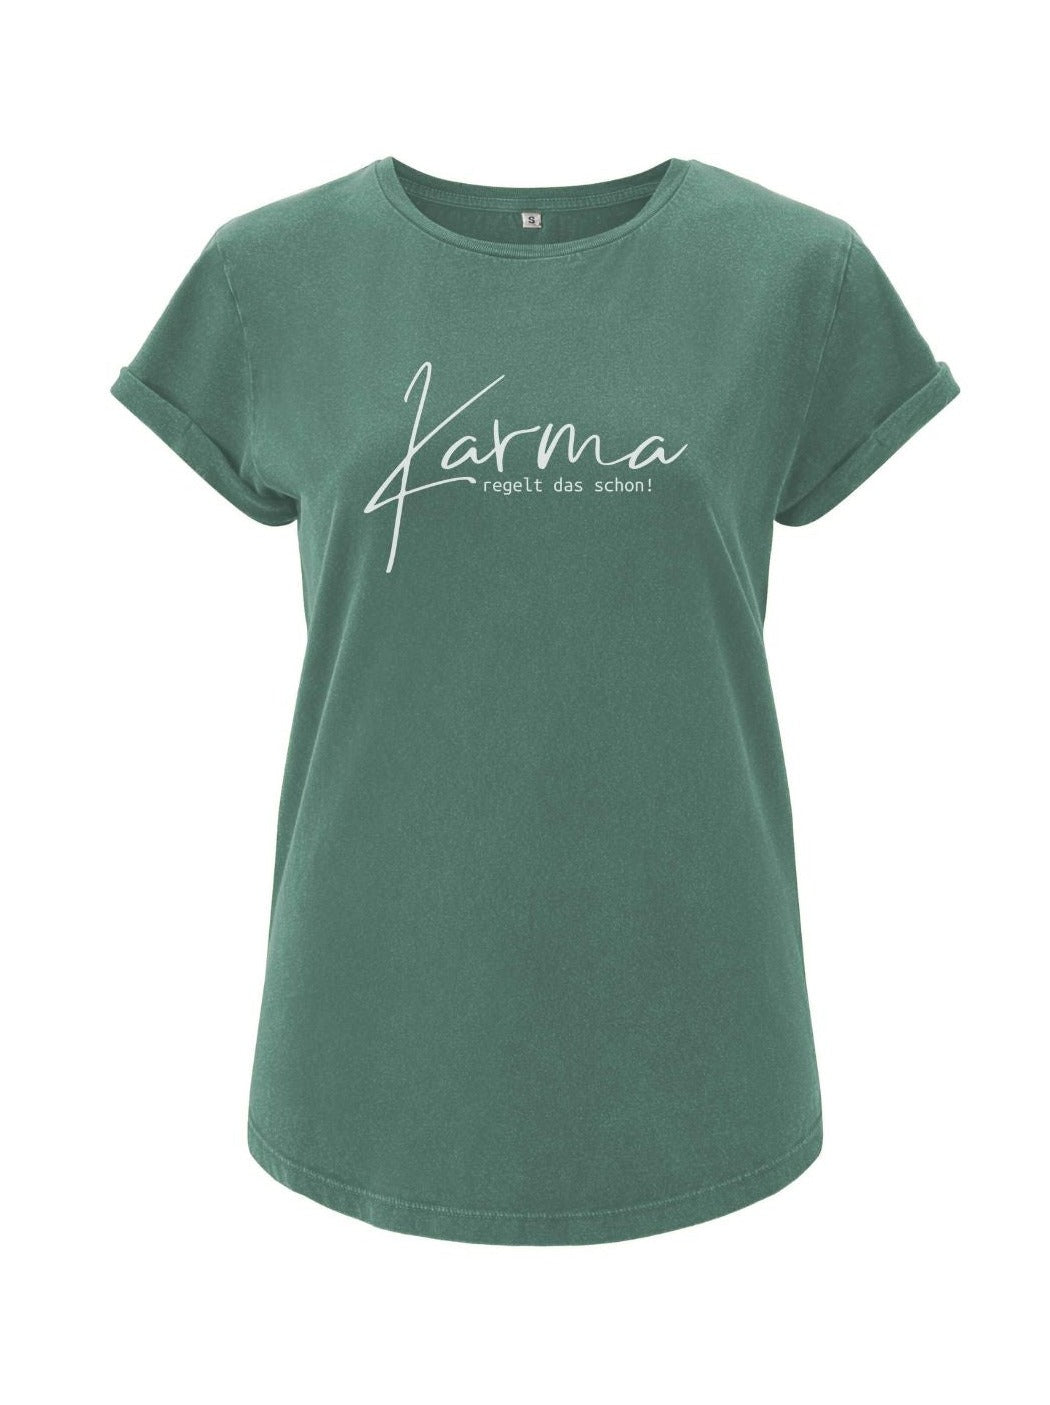 Damen T-Shirt KARMA rolled arms sage green